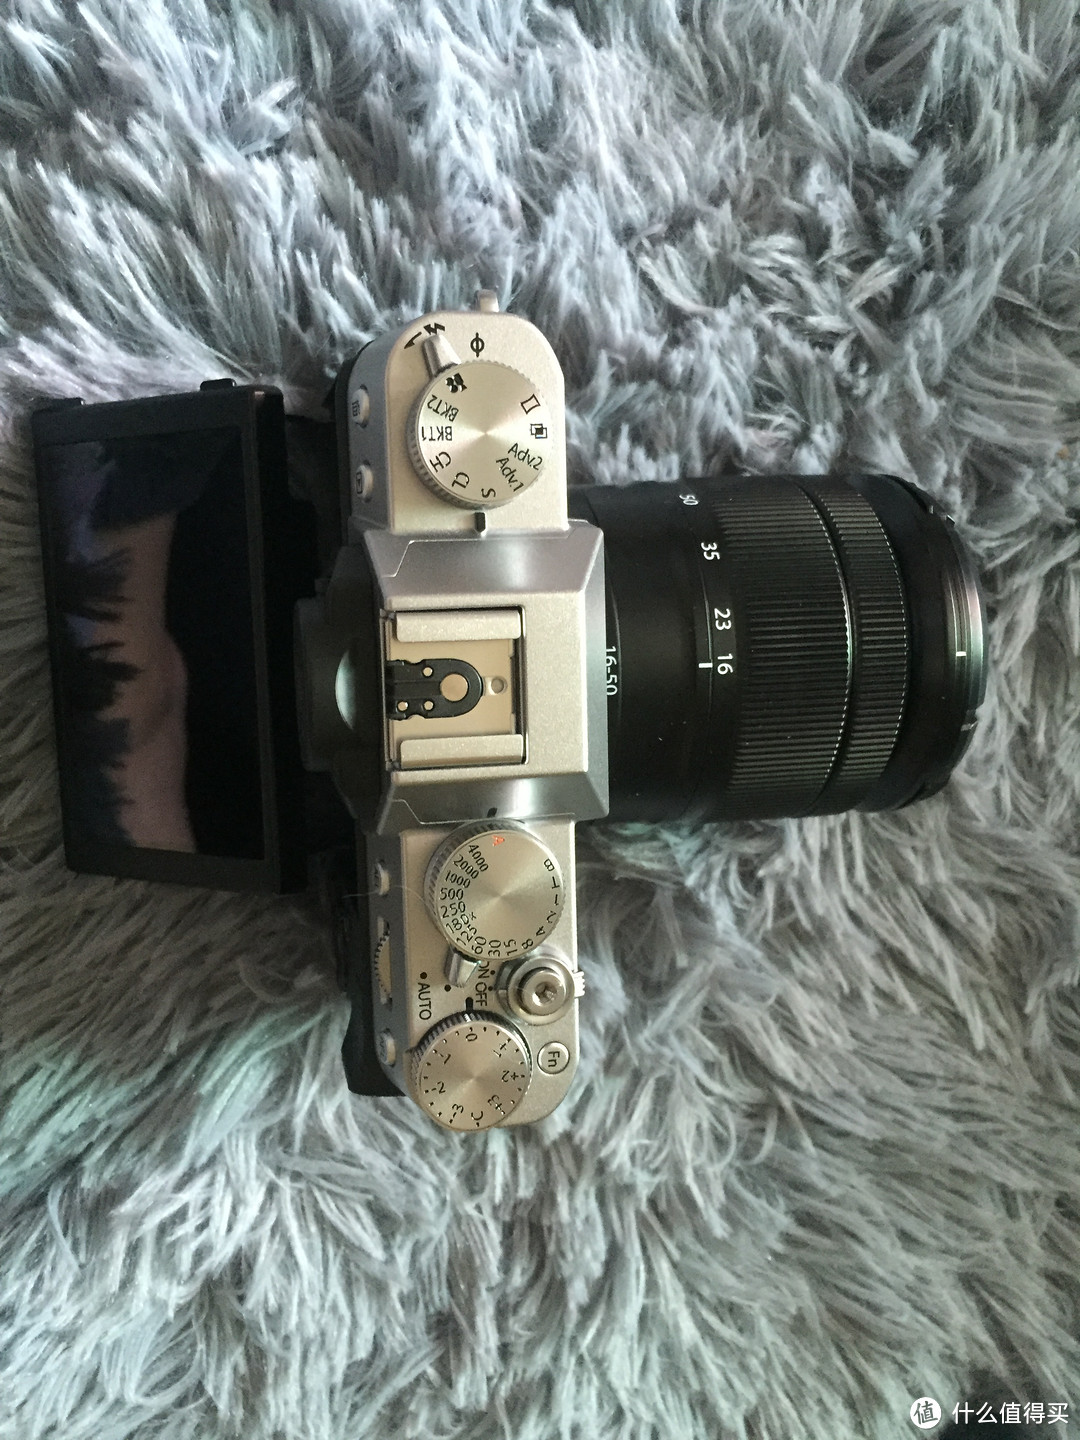 #原创新人# 我的第一台相机，超高颜值复古风 FUJIFILM 富士 X-T20 无反相机 开箱